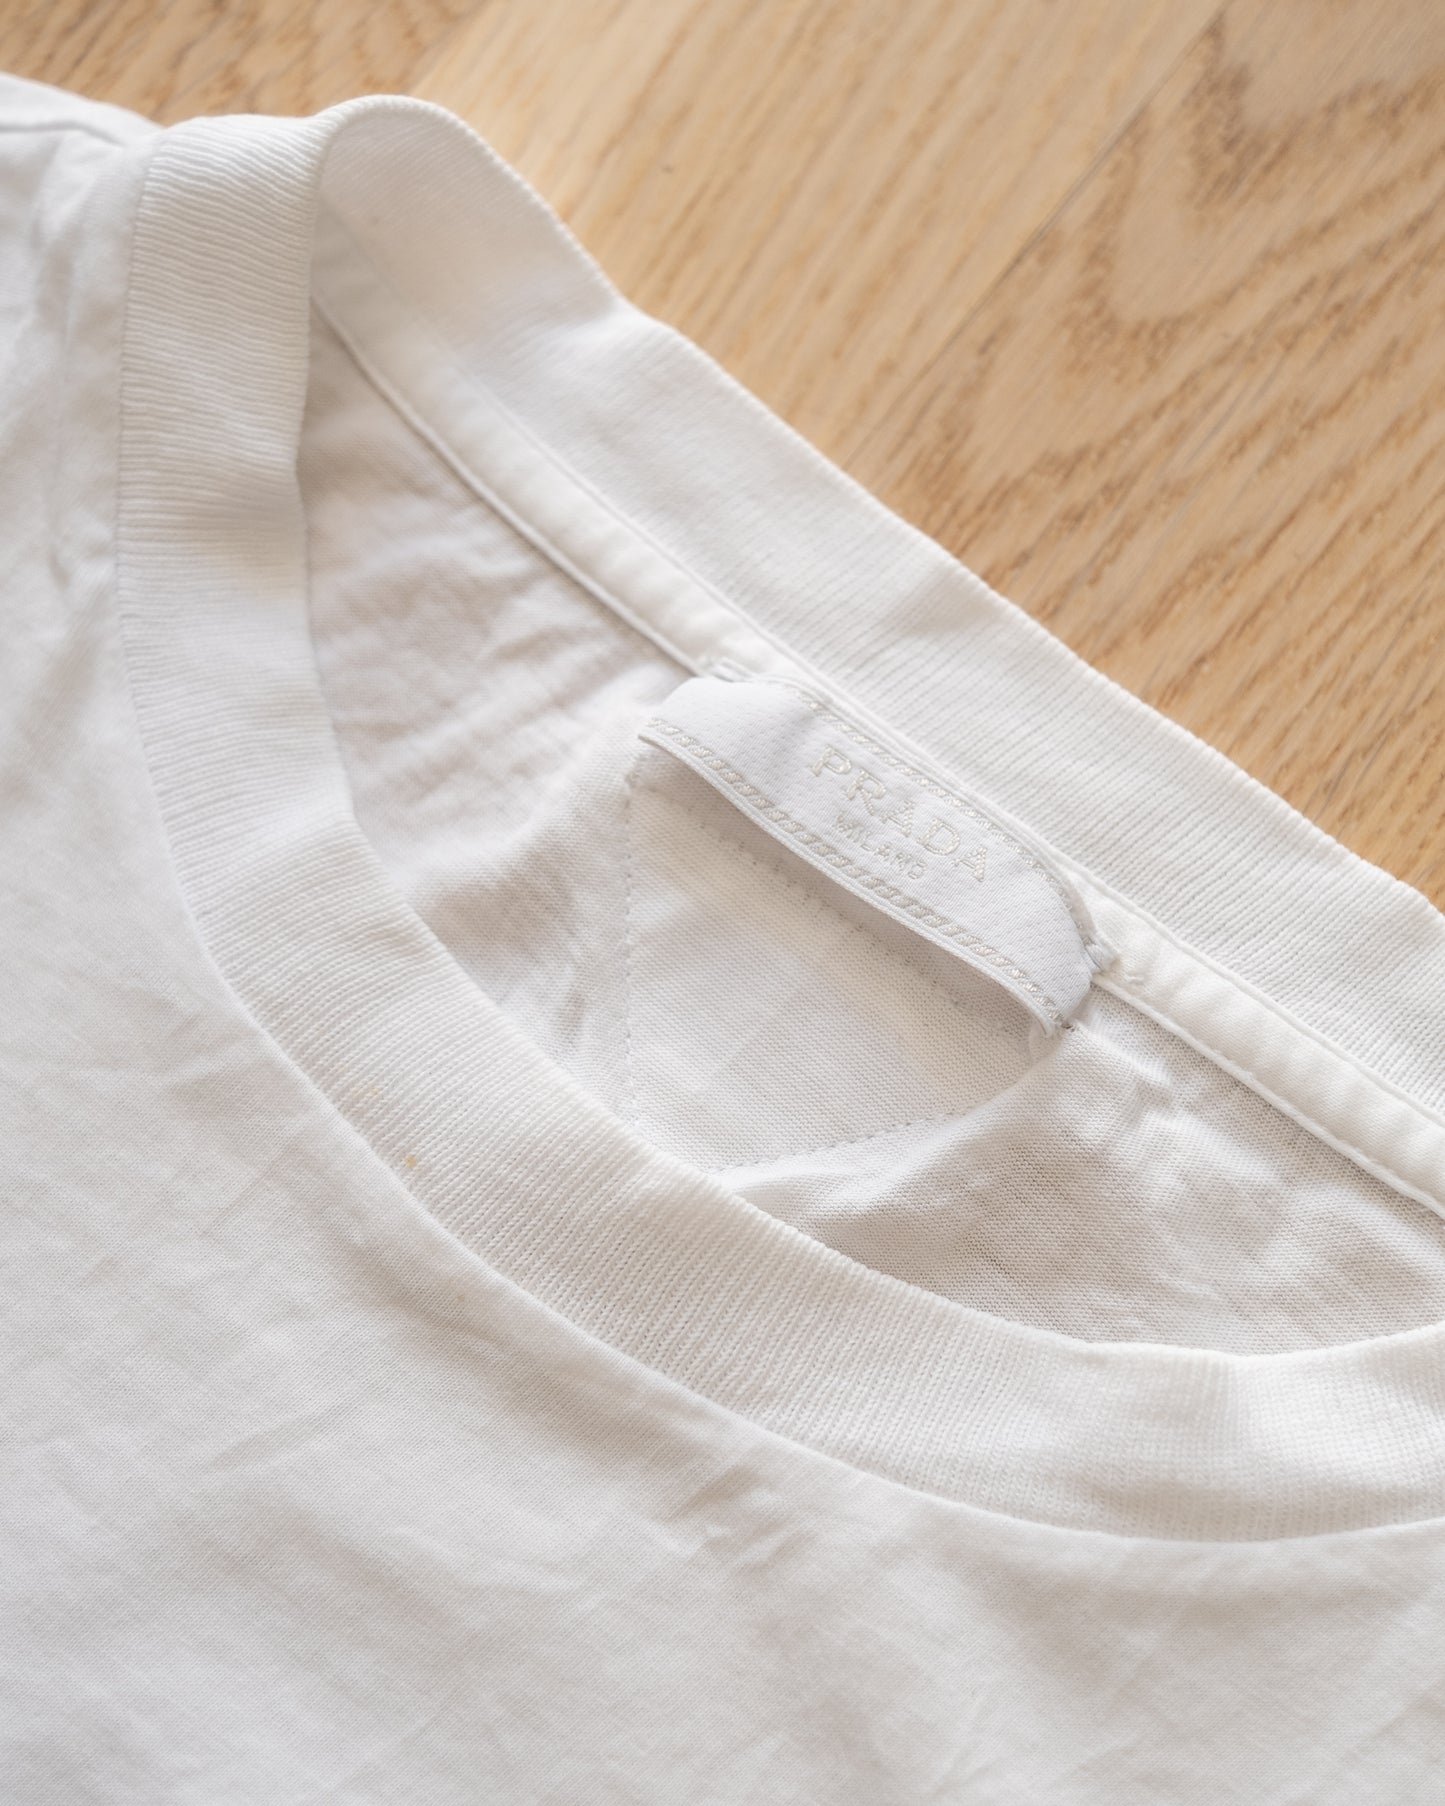 Prada Vintage Cotton Jersey T-Shirt Size L